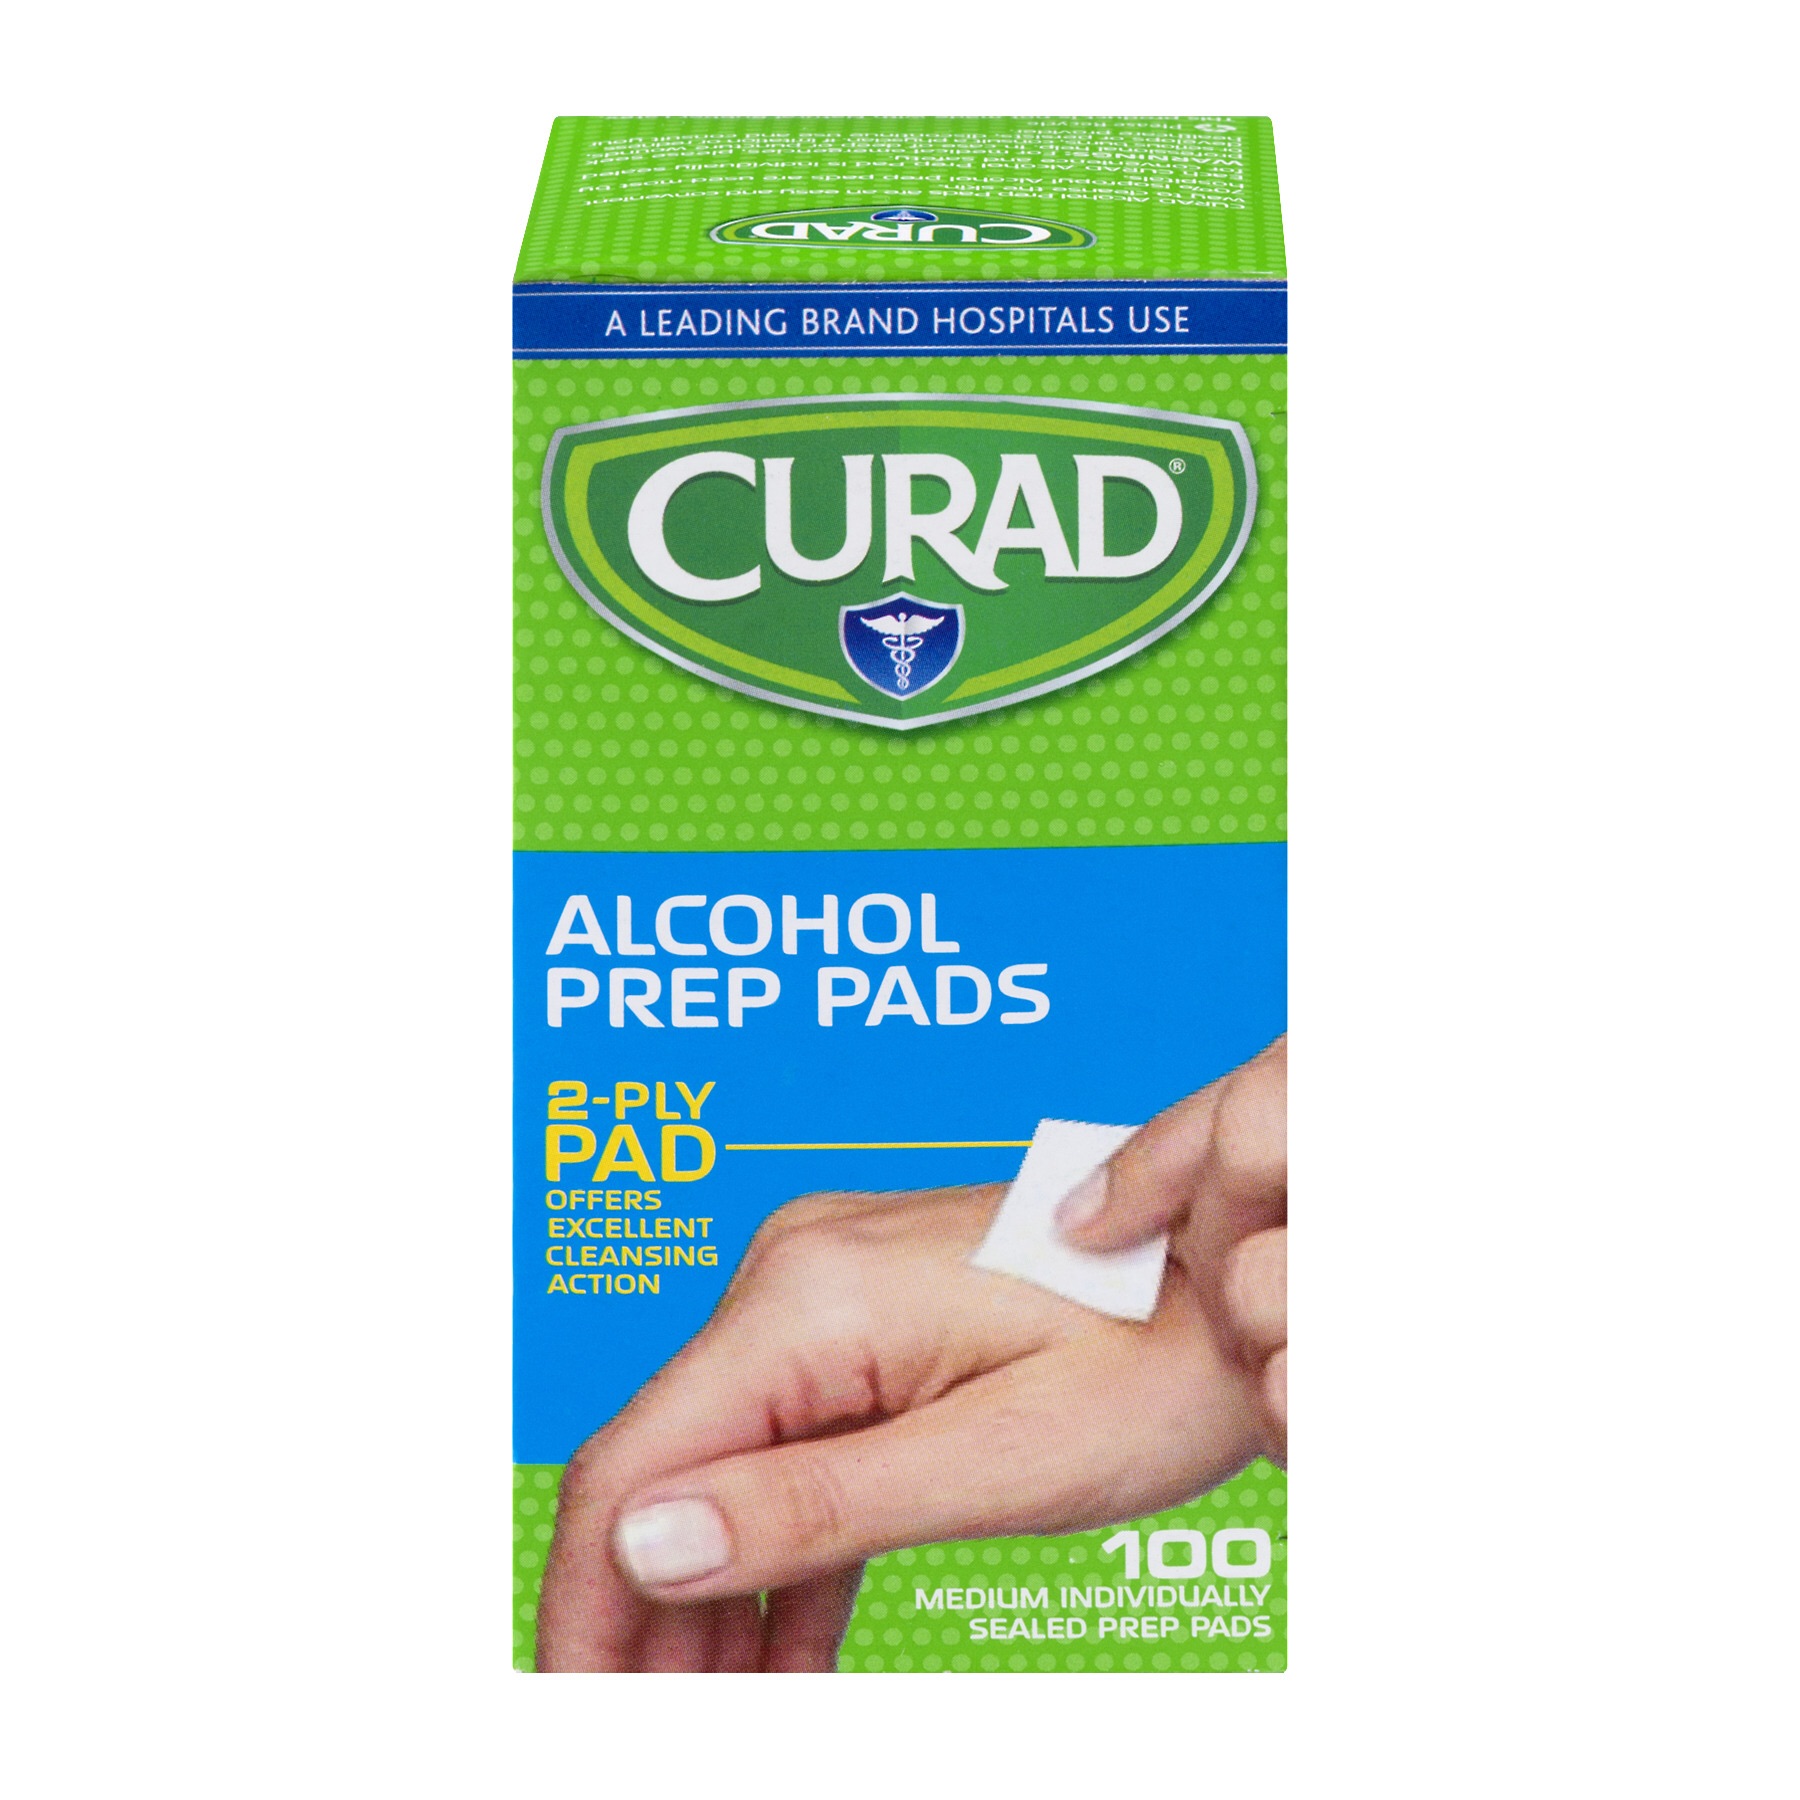 (6 pack) Curad Alcohol Prep Pads, 100 ct. - Walmart.com - Walmart.com。酒精消毒片